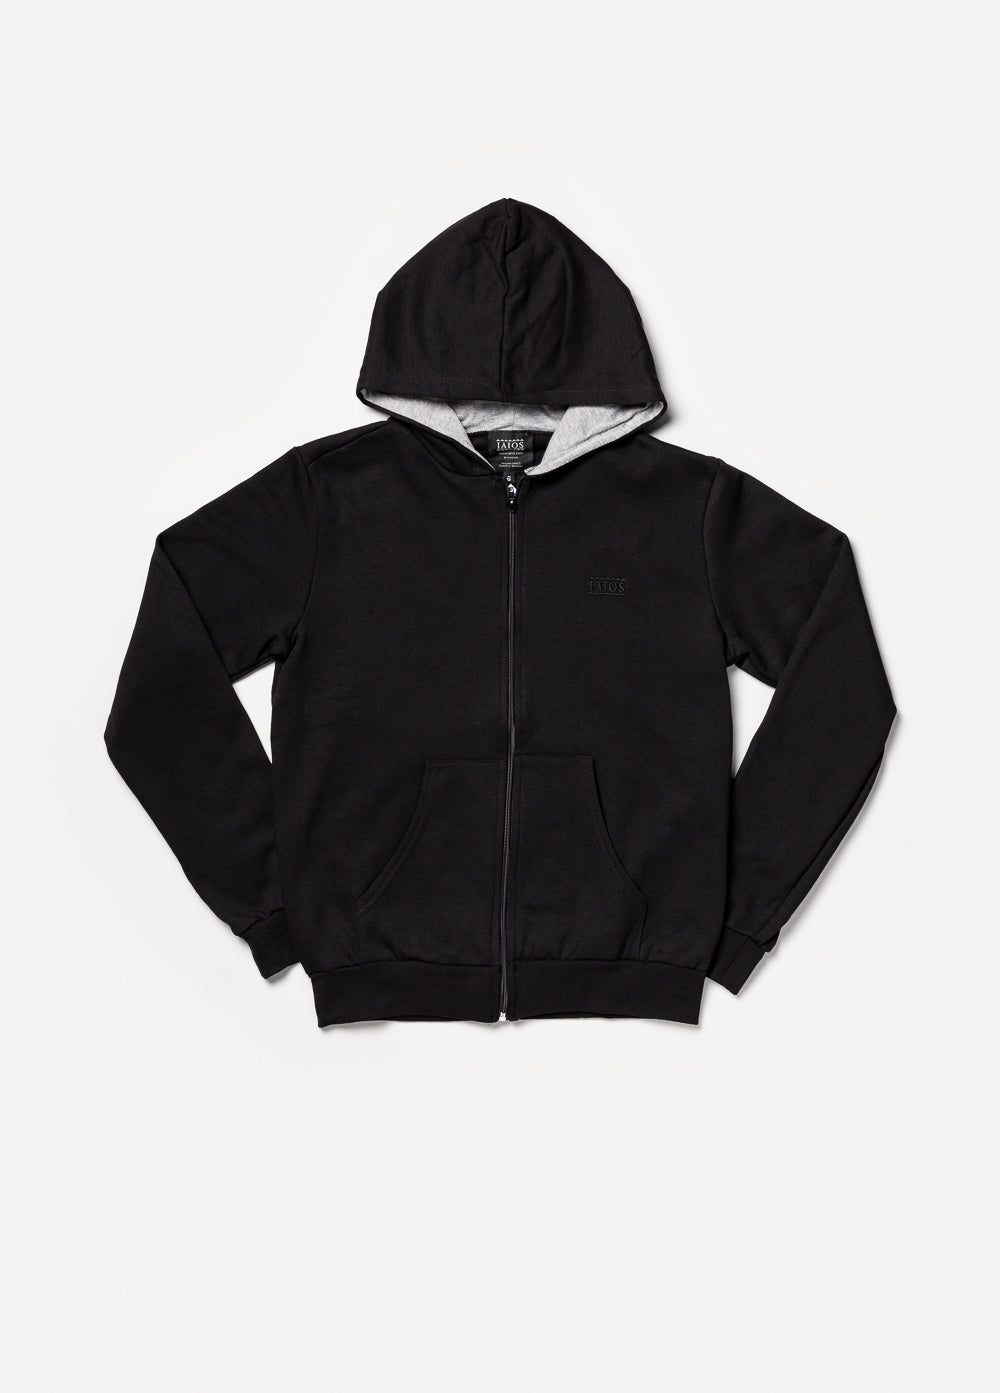 Black zip-up sweatshirt